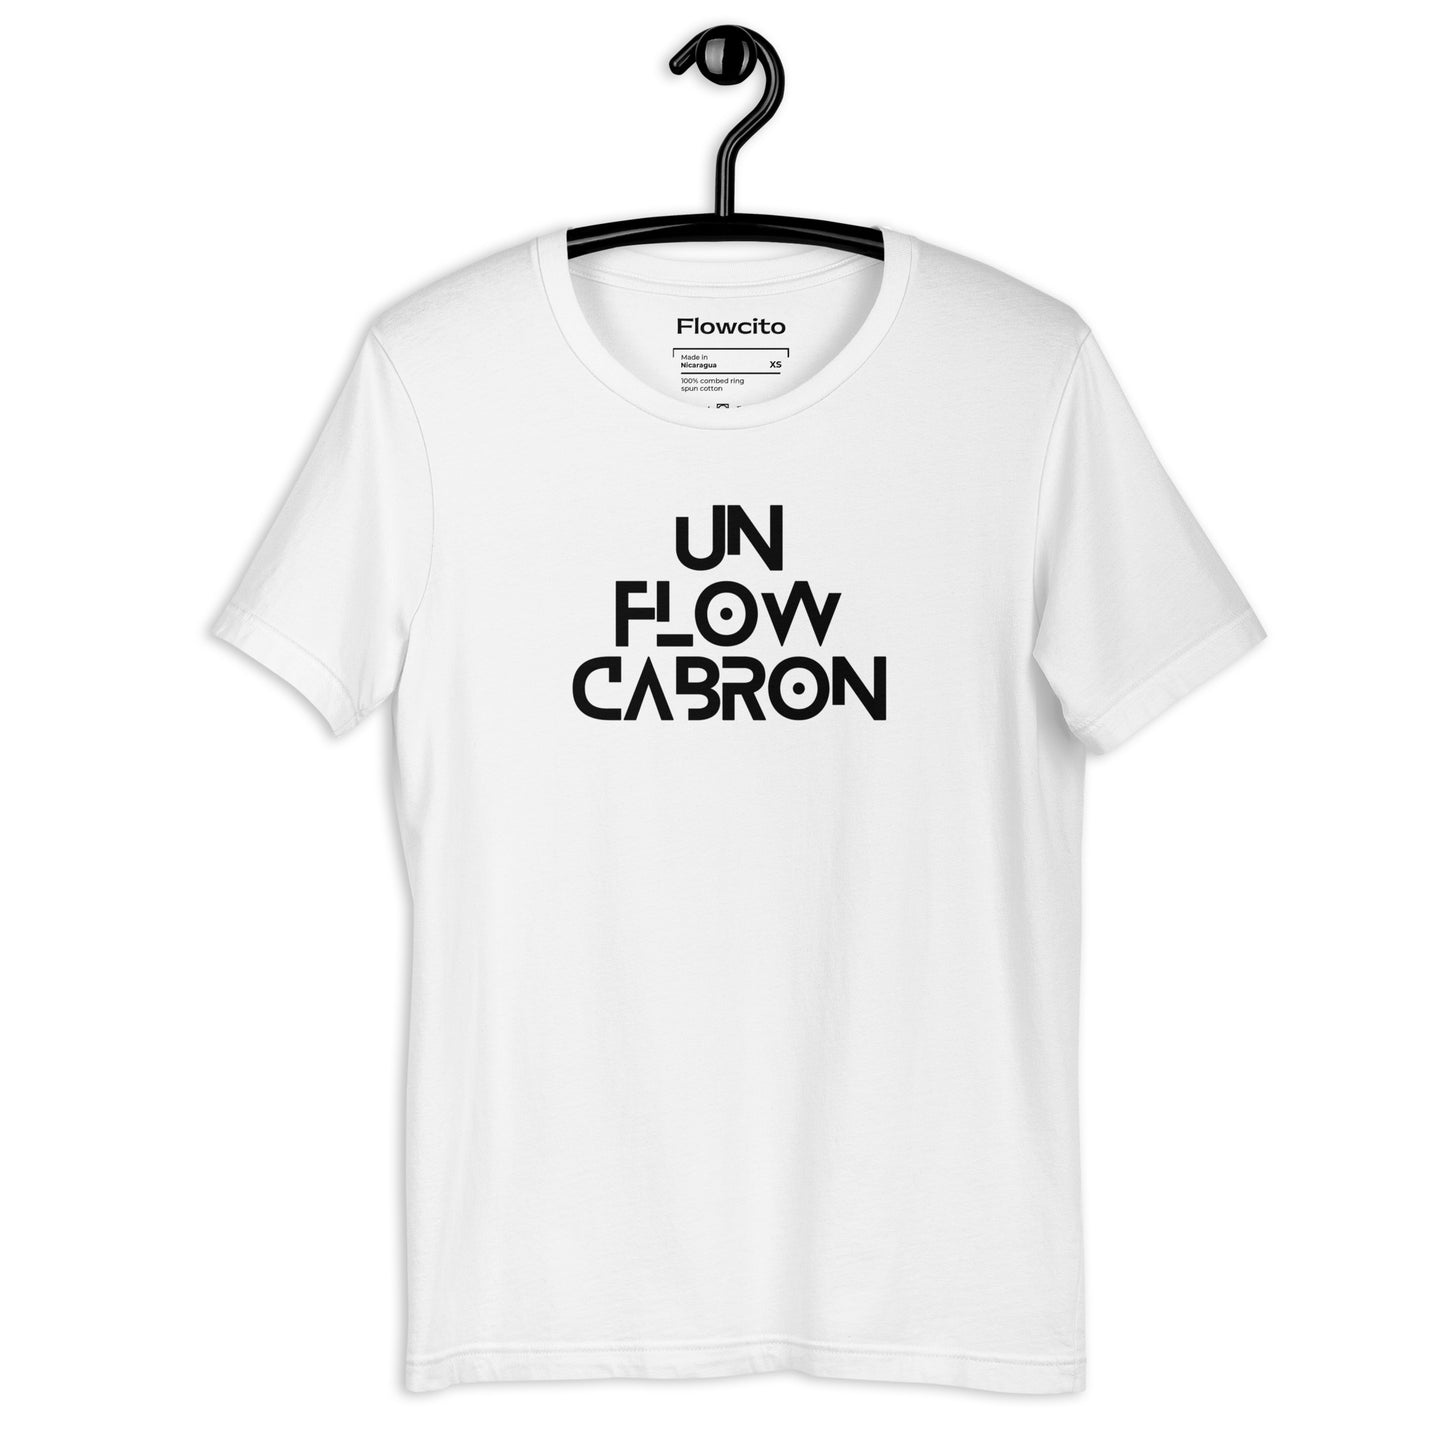 Un Flow Cabron Graffiti Unisex T-Shirt